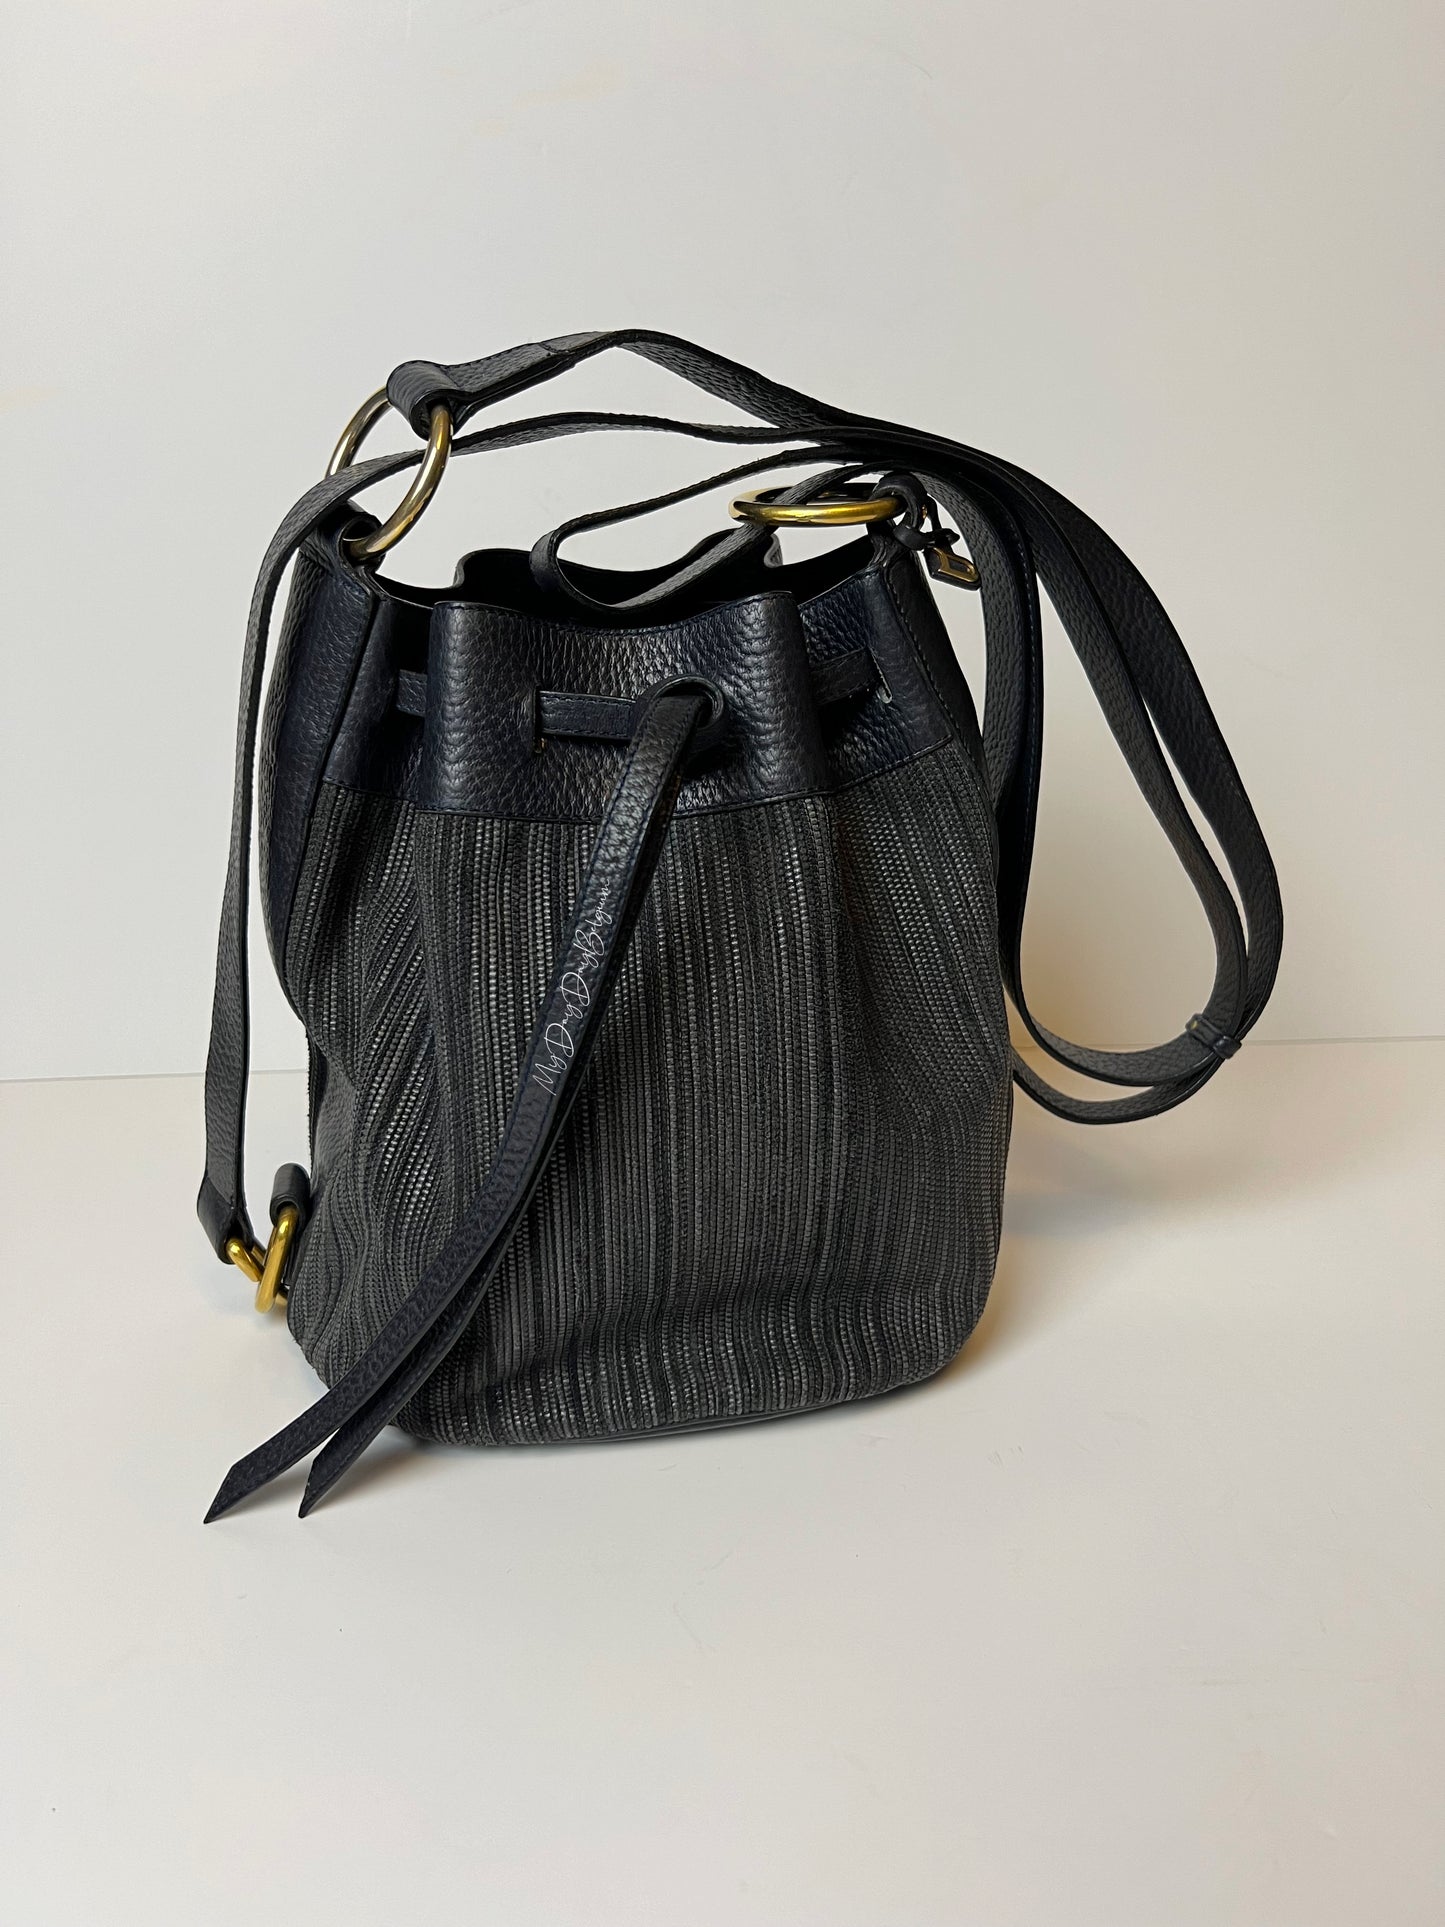 Delvaux vintage carafon cross shoulder bag in toile de cuir 1985